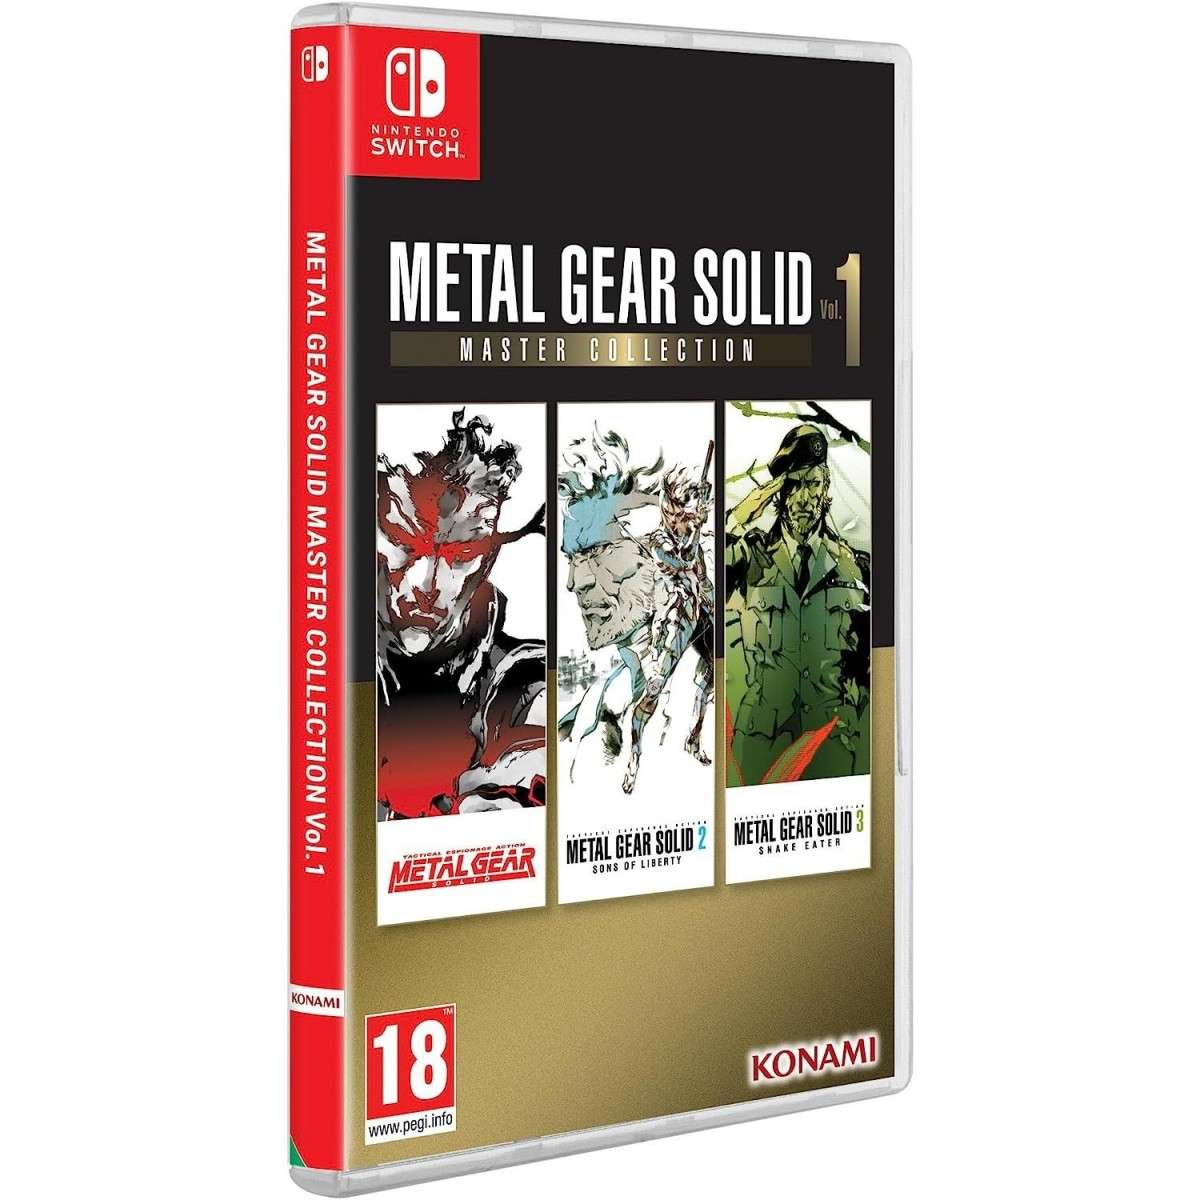 Metal Gear Solid: Master Collection Vol 1 Juego para Nintendo Switch